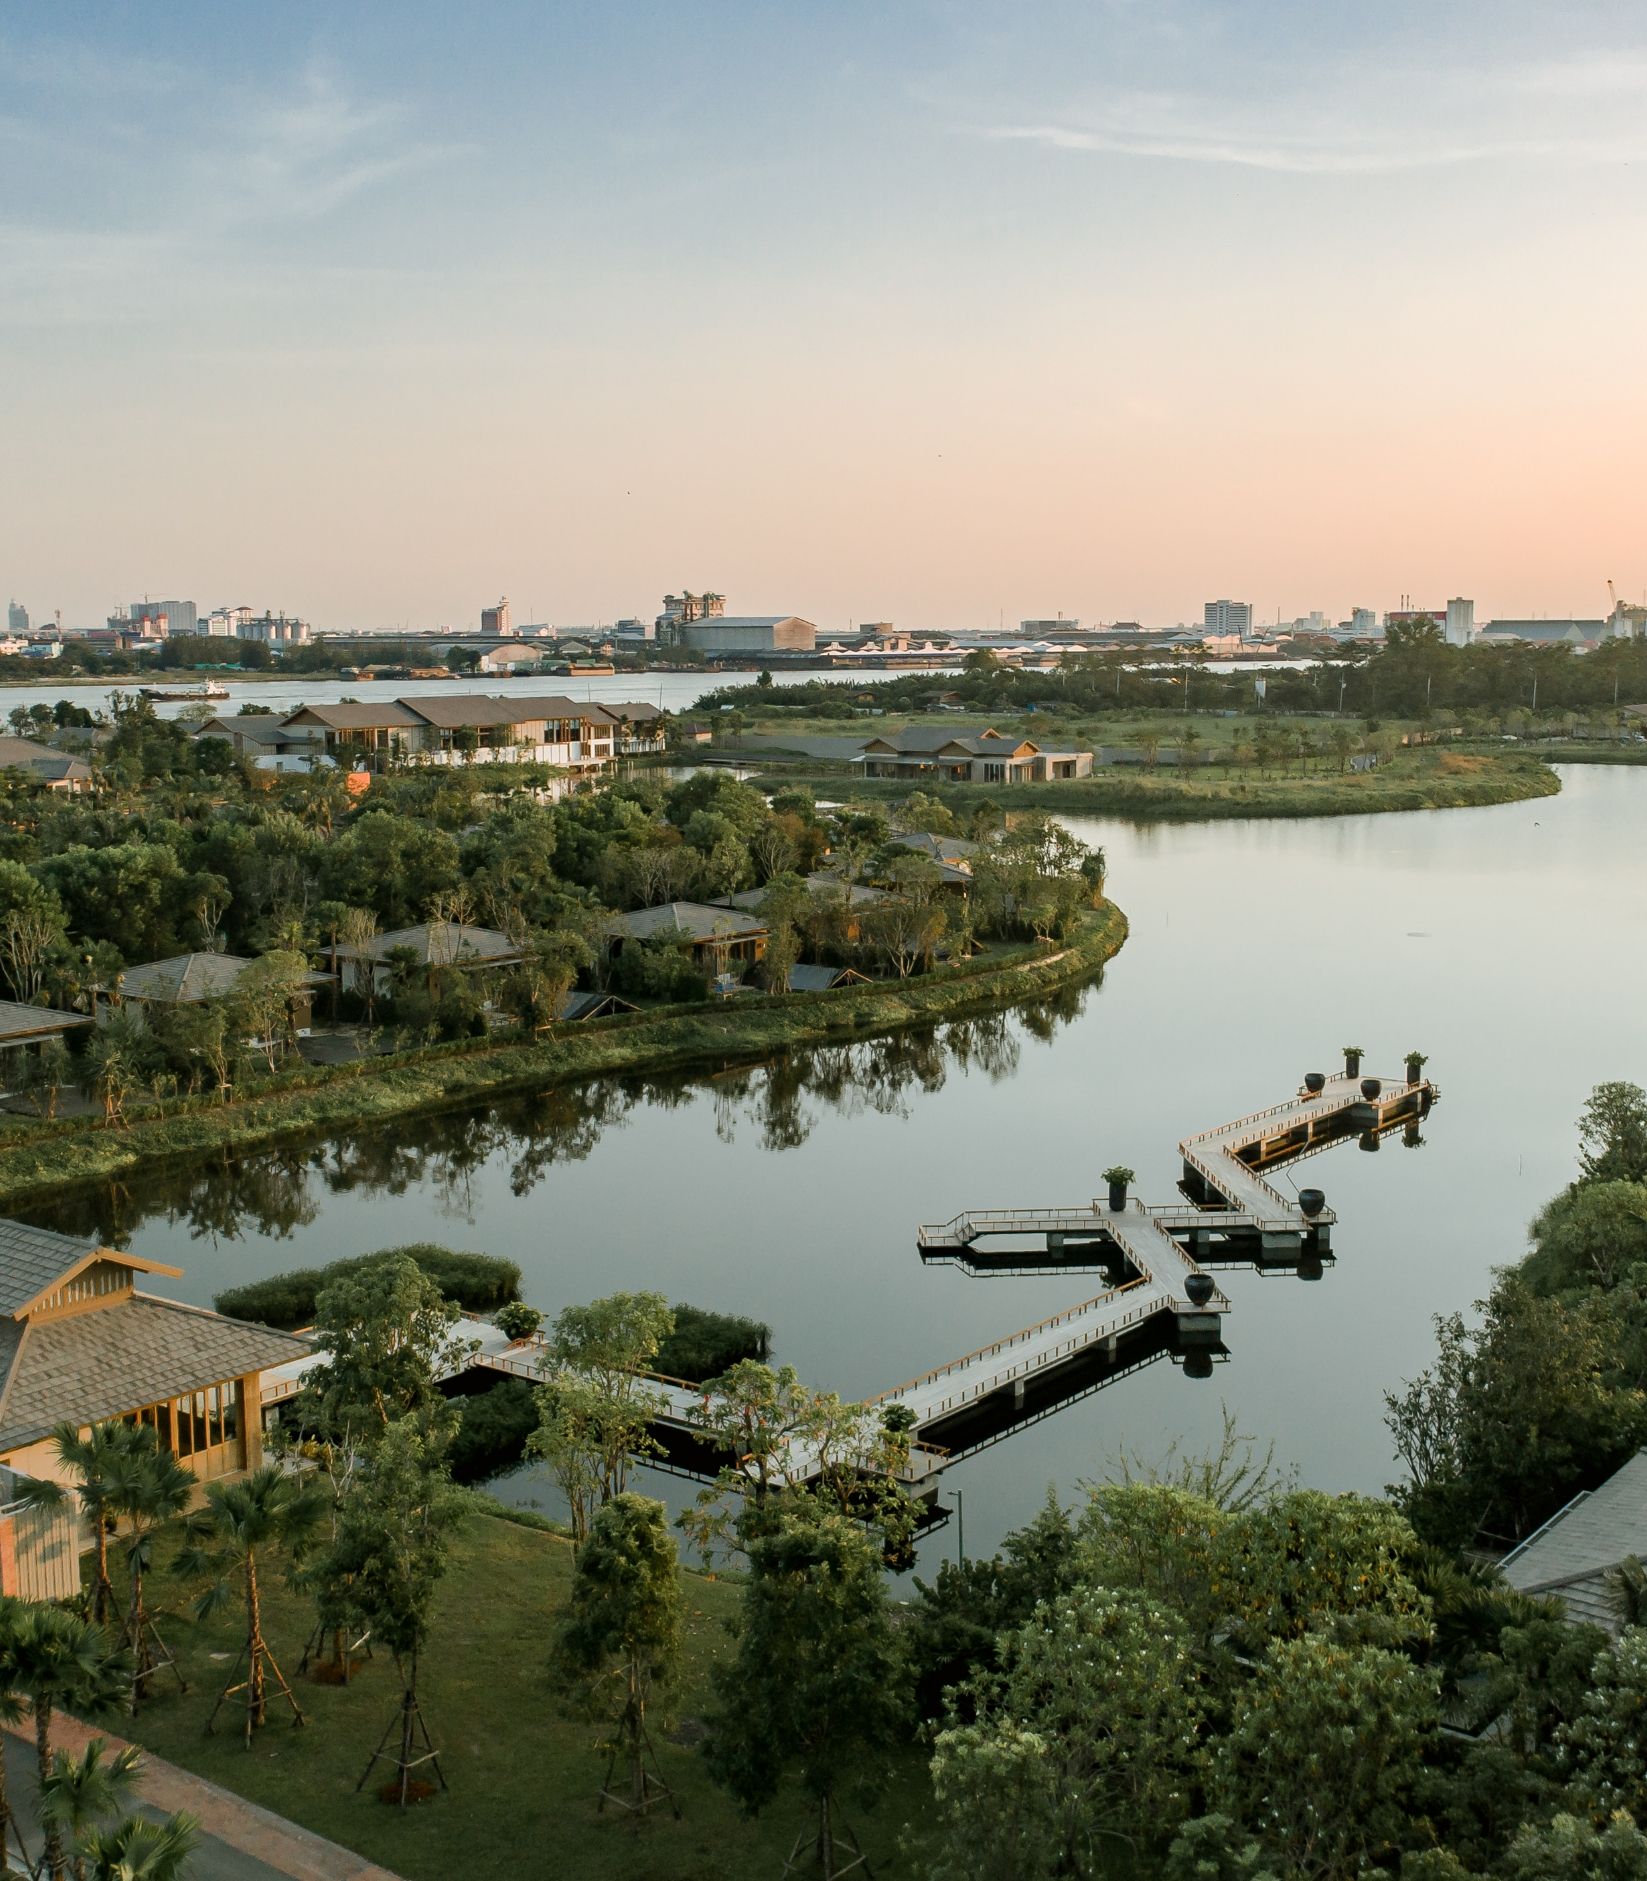 RAKxa Wellness property nestled on the leafy green shores of Bangkok’s Chao Phraya River